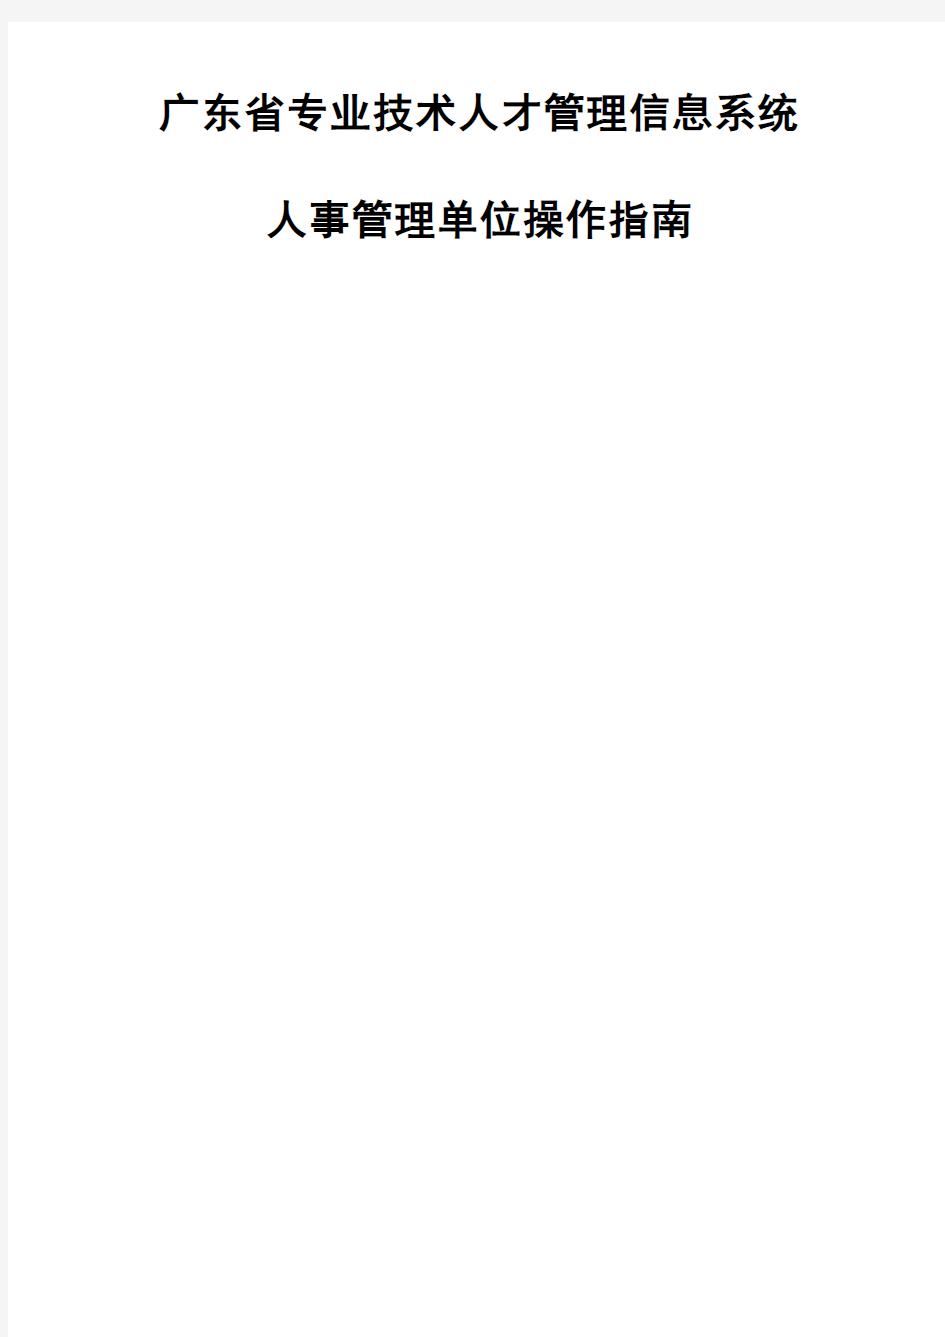 2016年广东省职称评审申报系统-人事管理单位